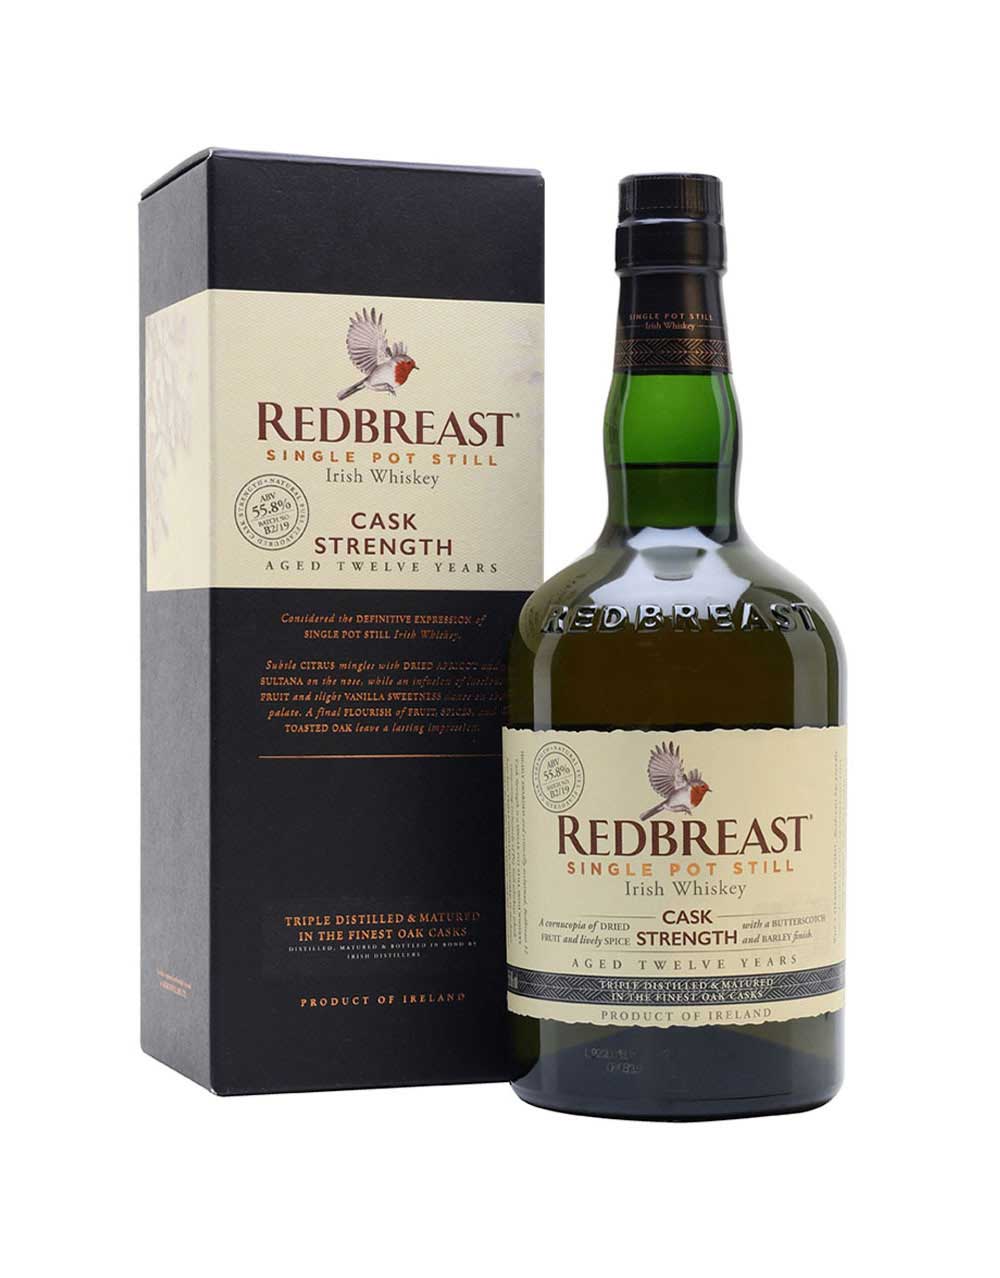 Redbreast Cask Strength Single Pot Still Irish Whiskey